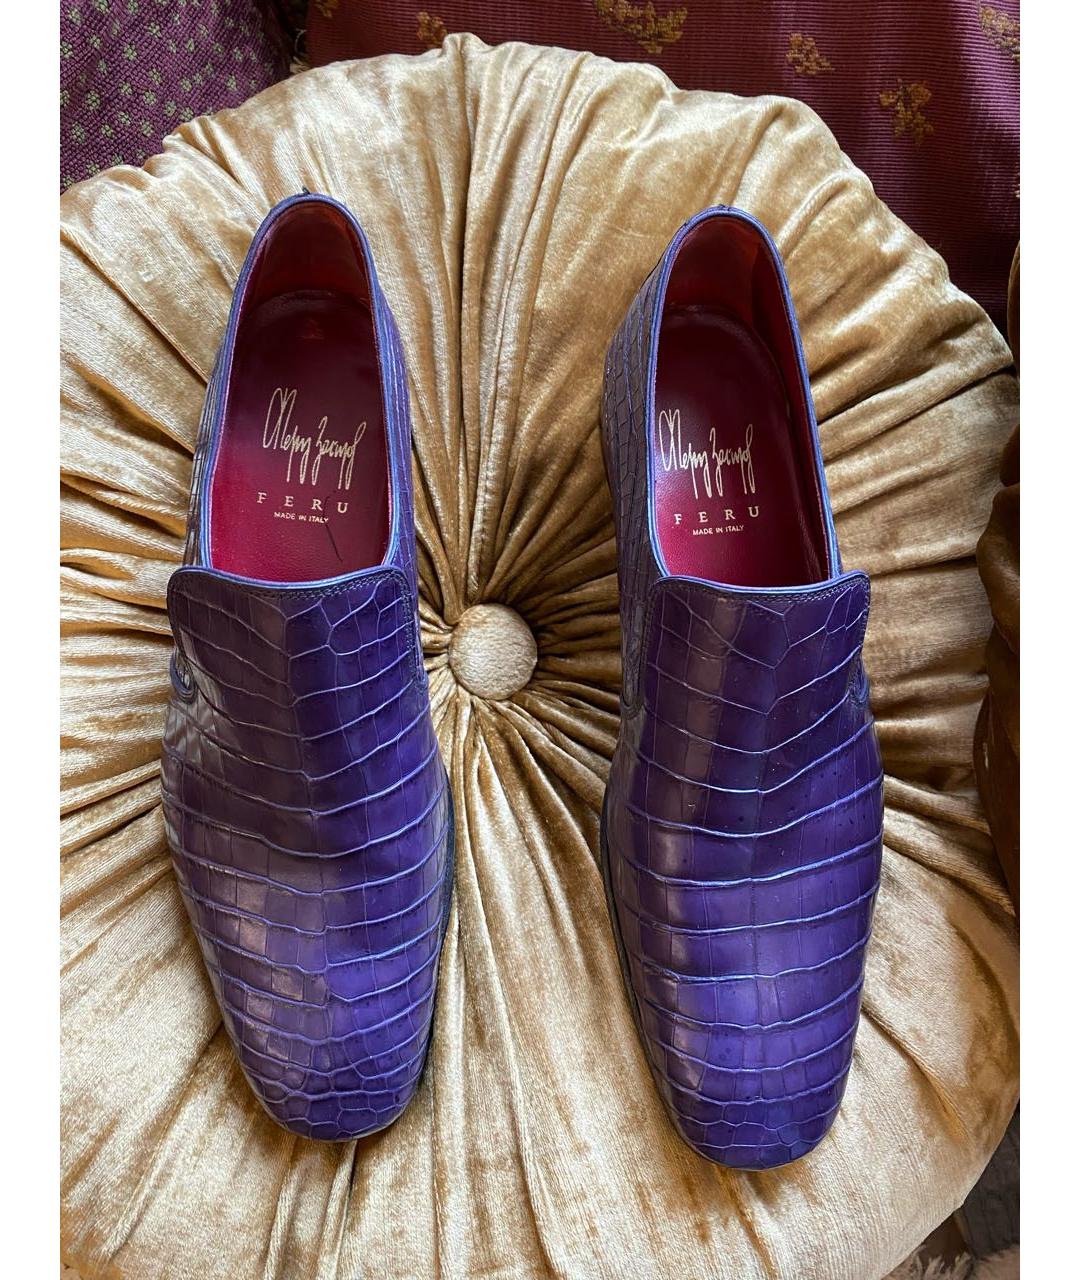 FERU Фиолетовые туфли из экзотической кожи, фото 4